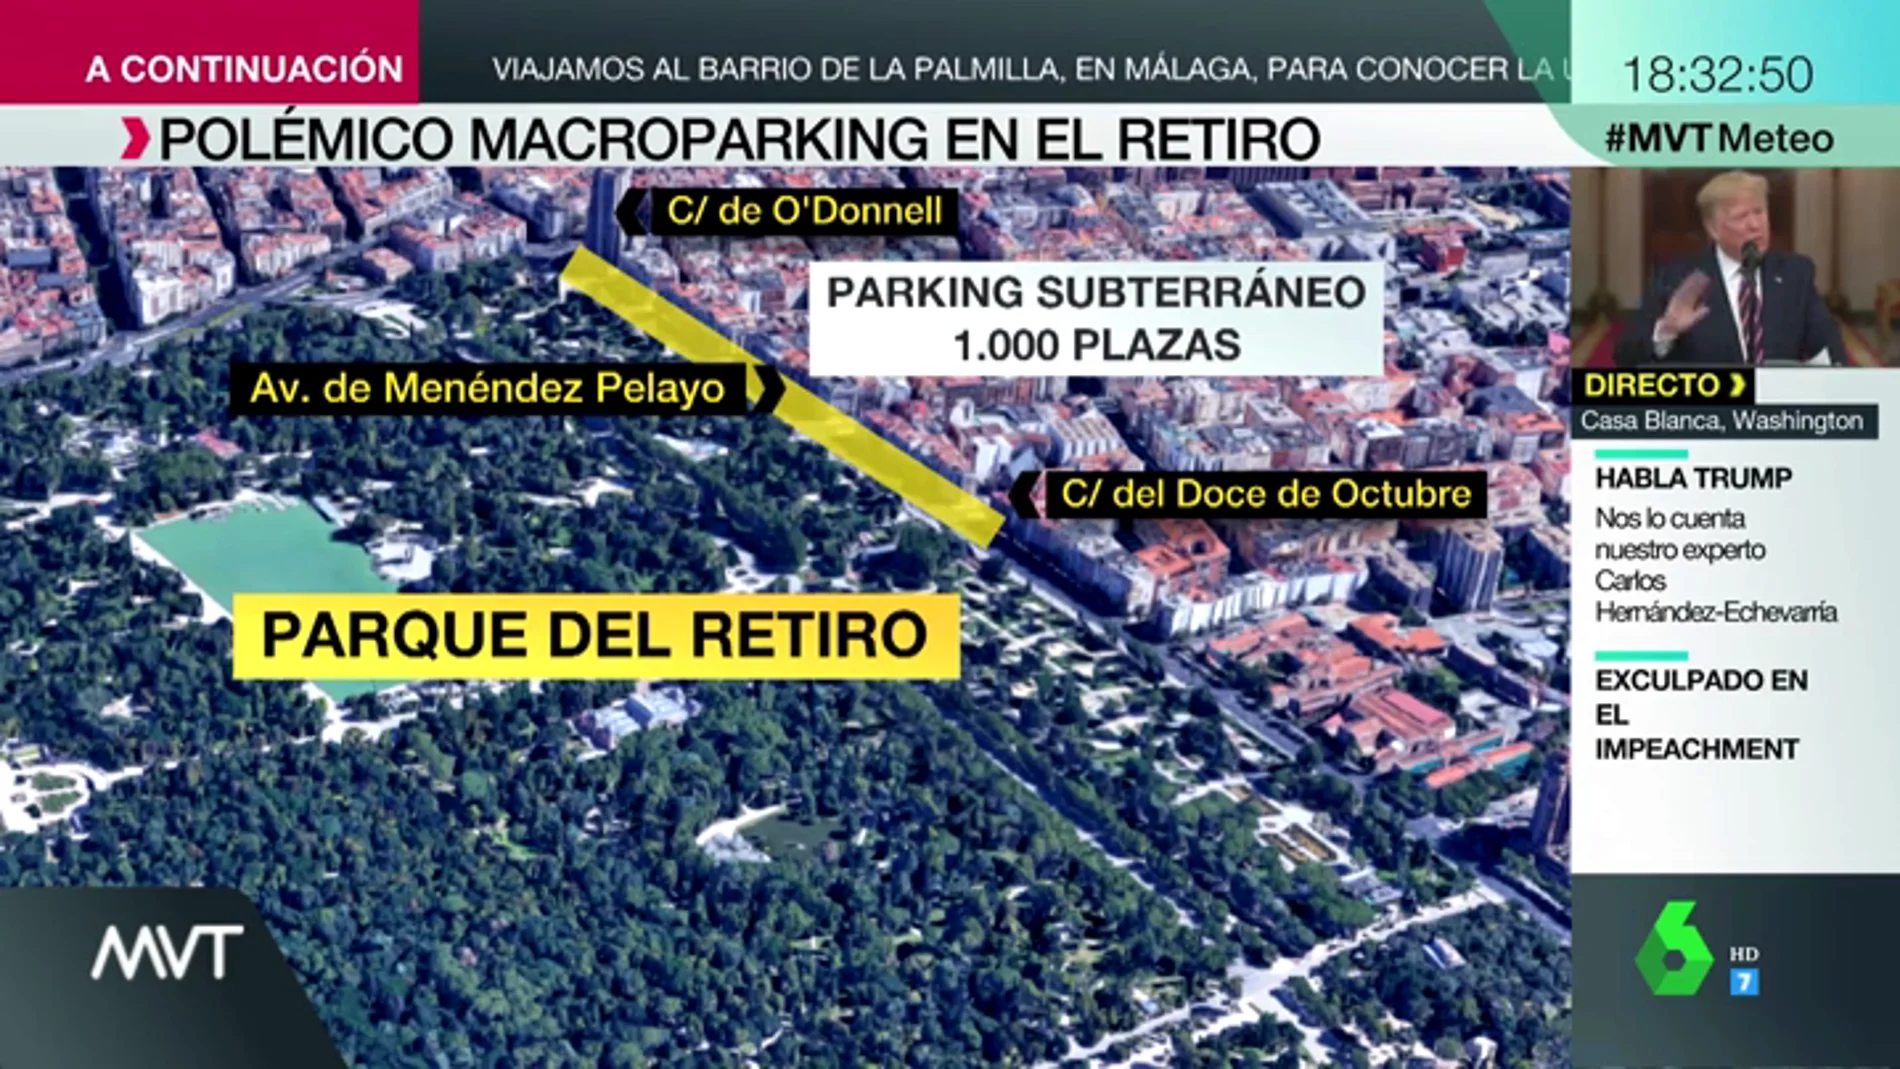 Así es el parking que quiere construir Martínez Almeida frente al Retiro: 1.000 plazas junto al pulmón verde de Madrid